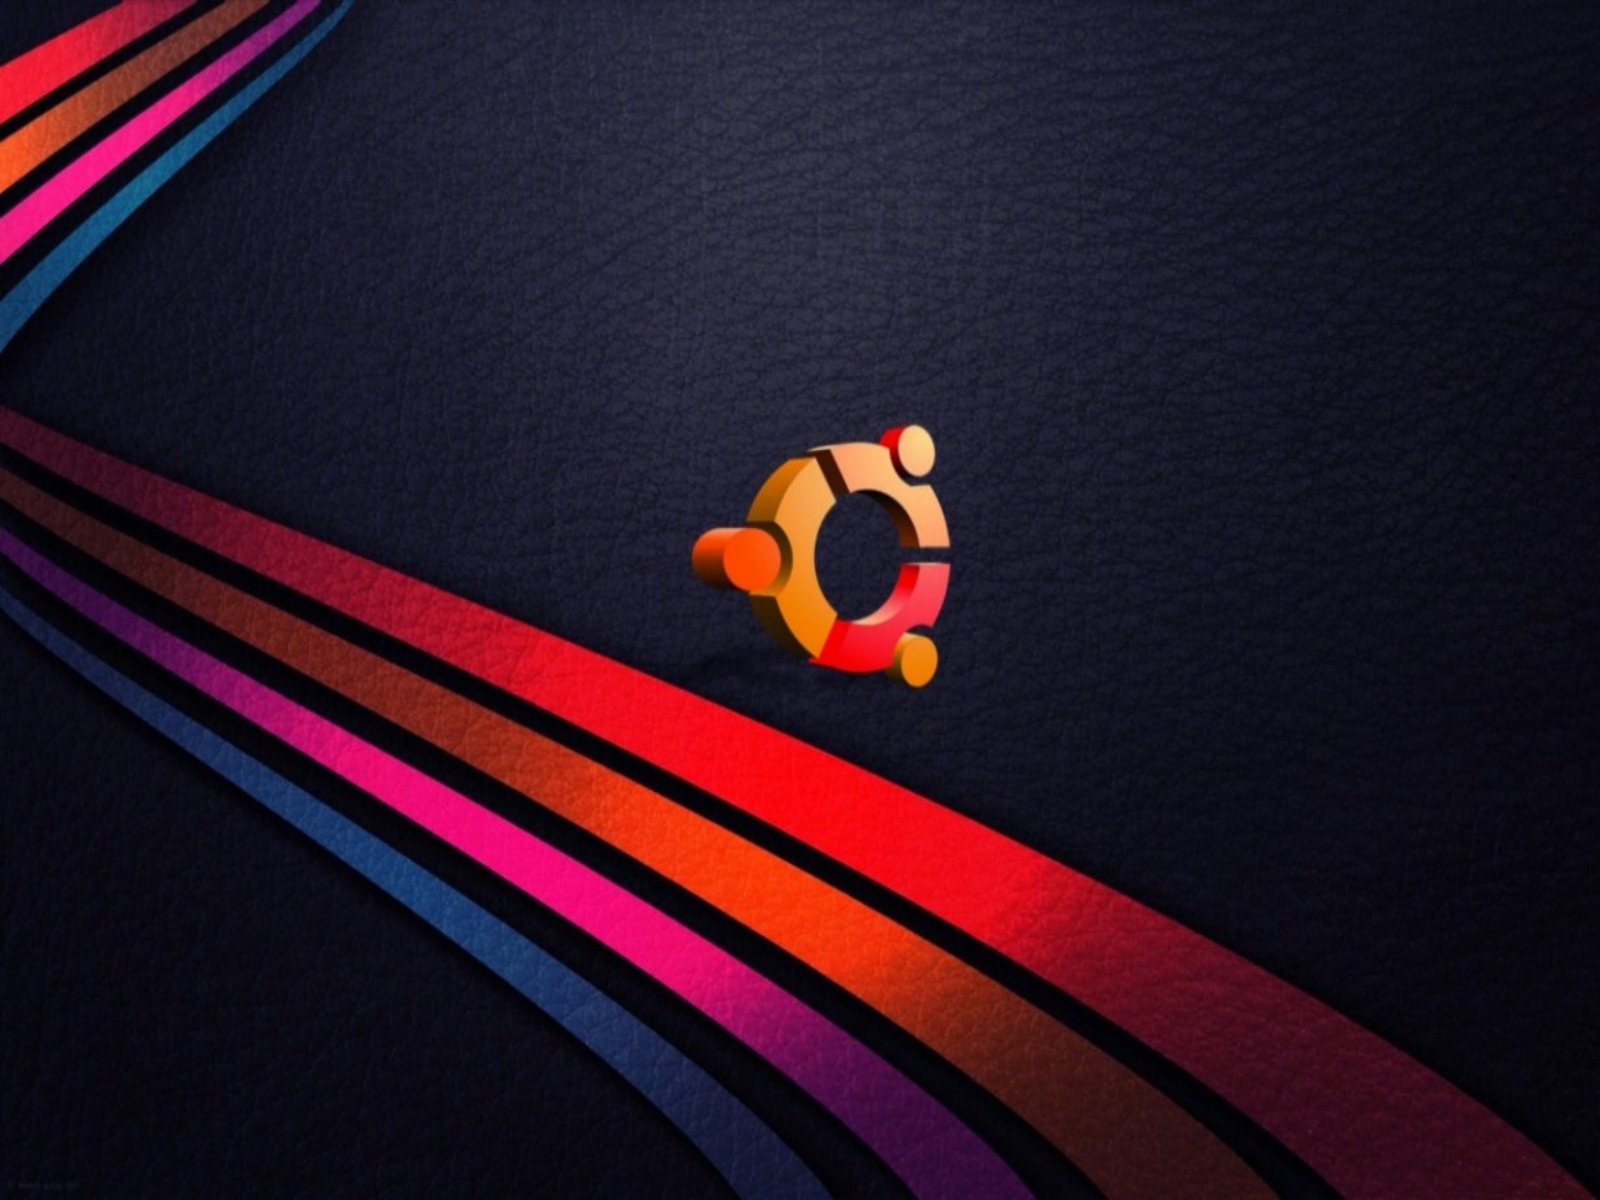 ubuntu wallpapers hd ubuntu wallpapers hd ubuntu wallpapers hd ubuntu